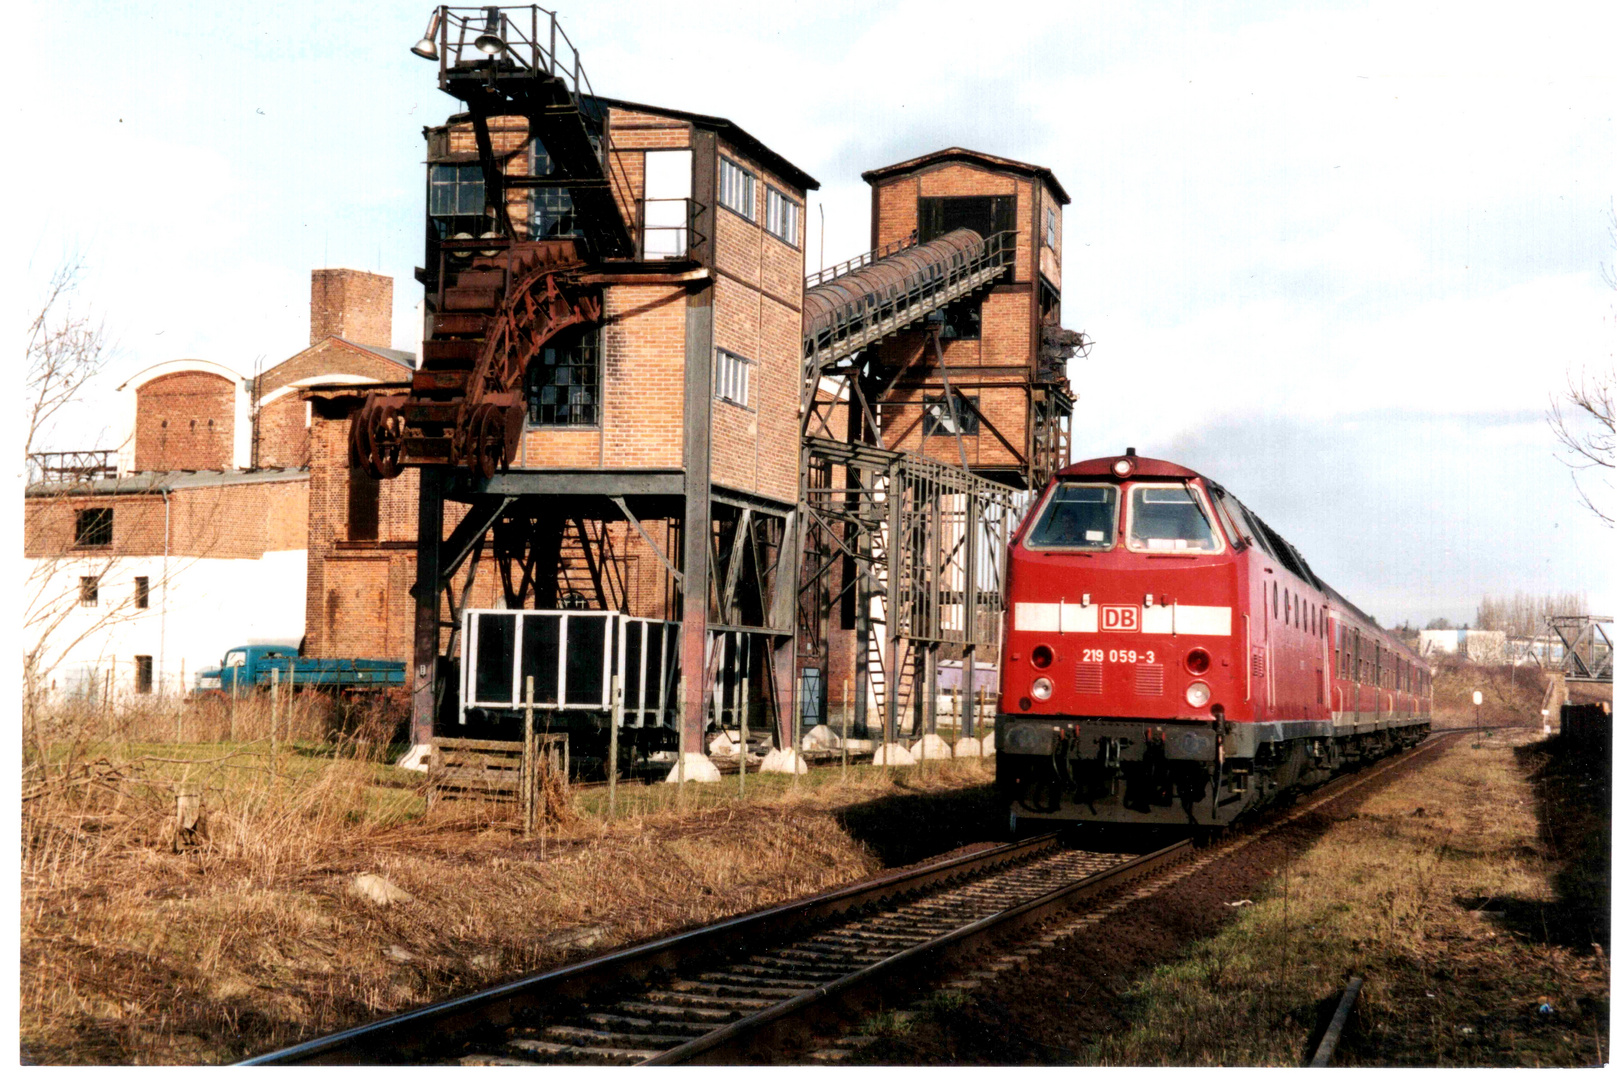 219 059-3 - Vorbeifahrt an alter Fabrik in Zeitz im Jahr 2002